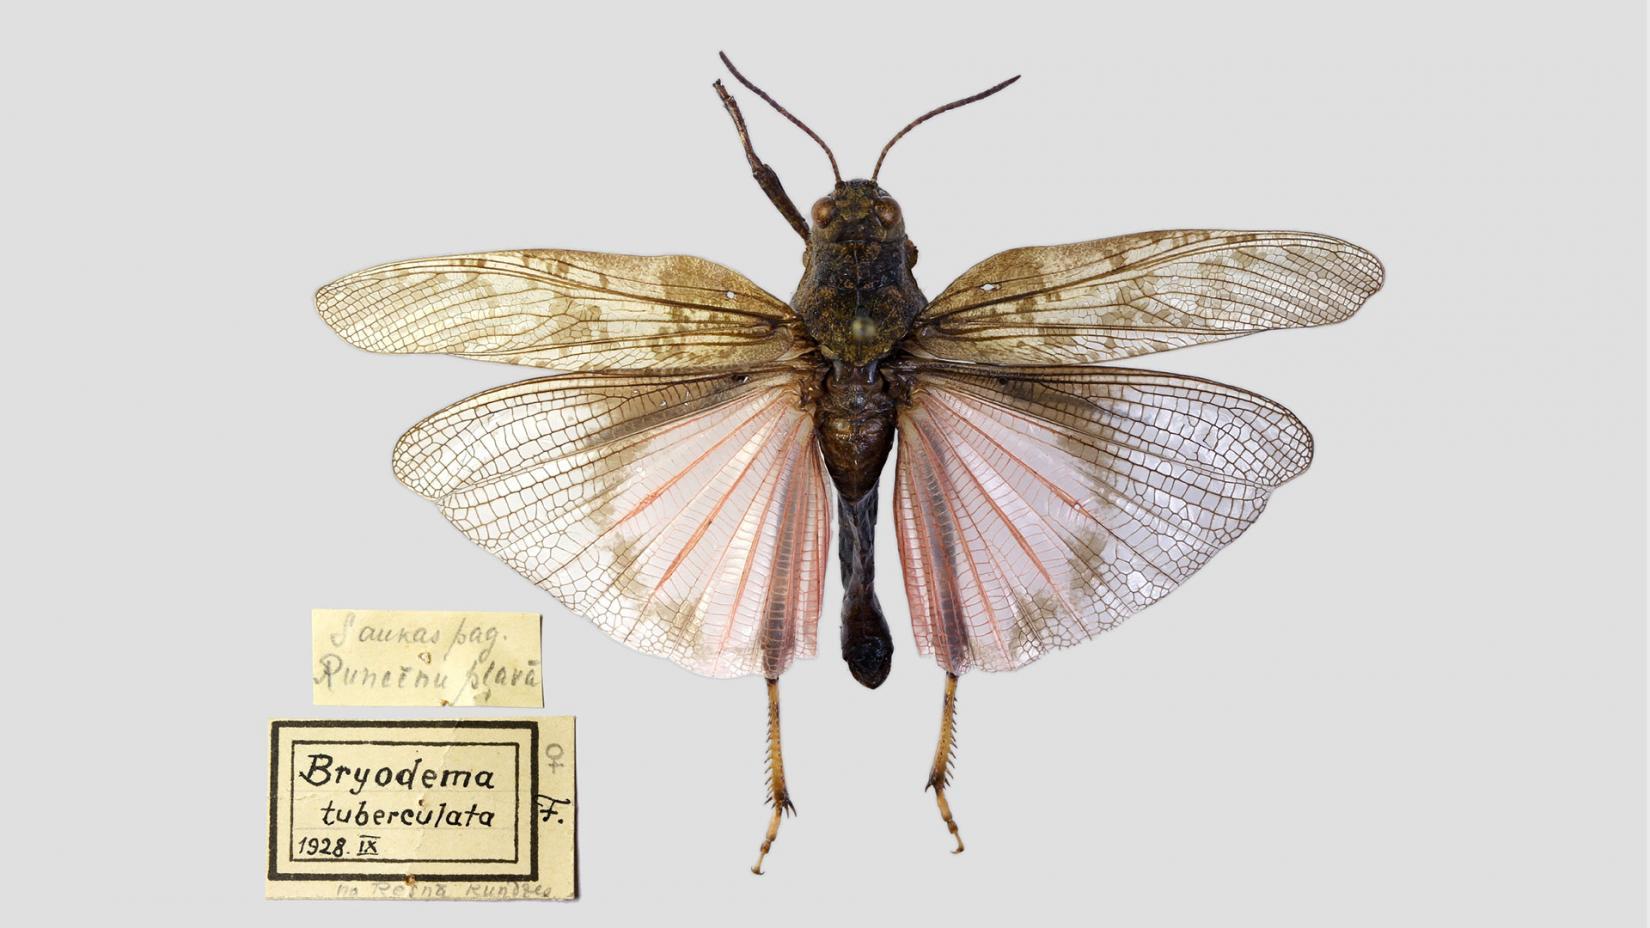  Трещотка ширококрылая  (Bryodemella tuberculata)